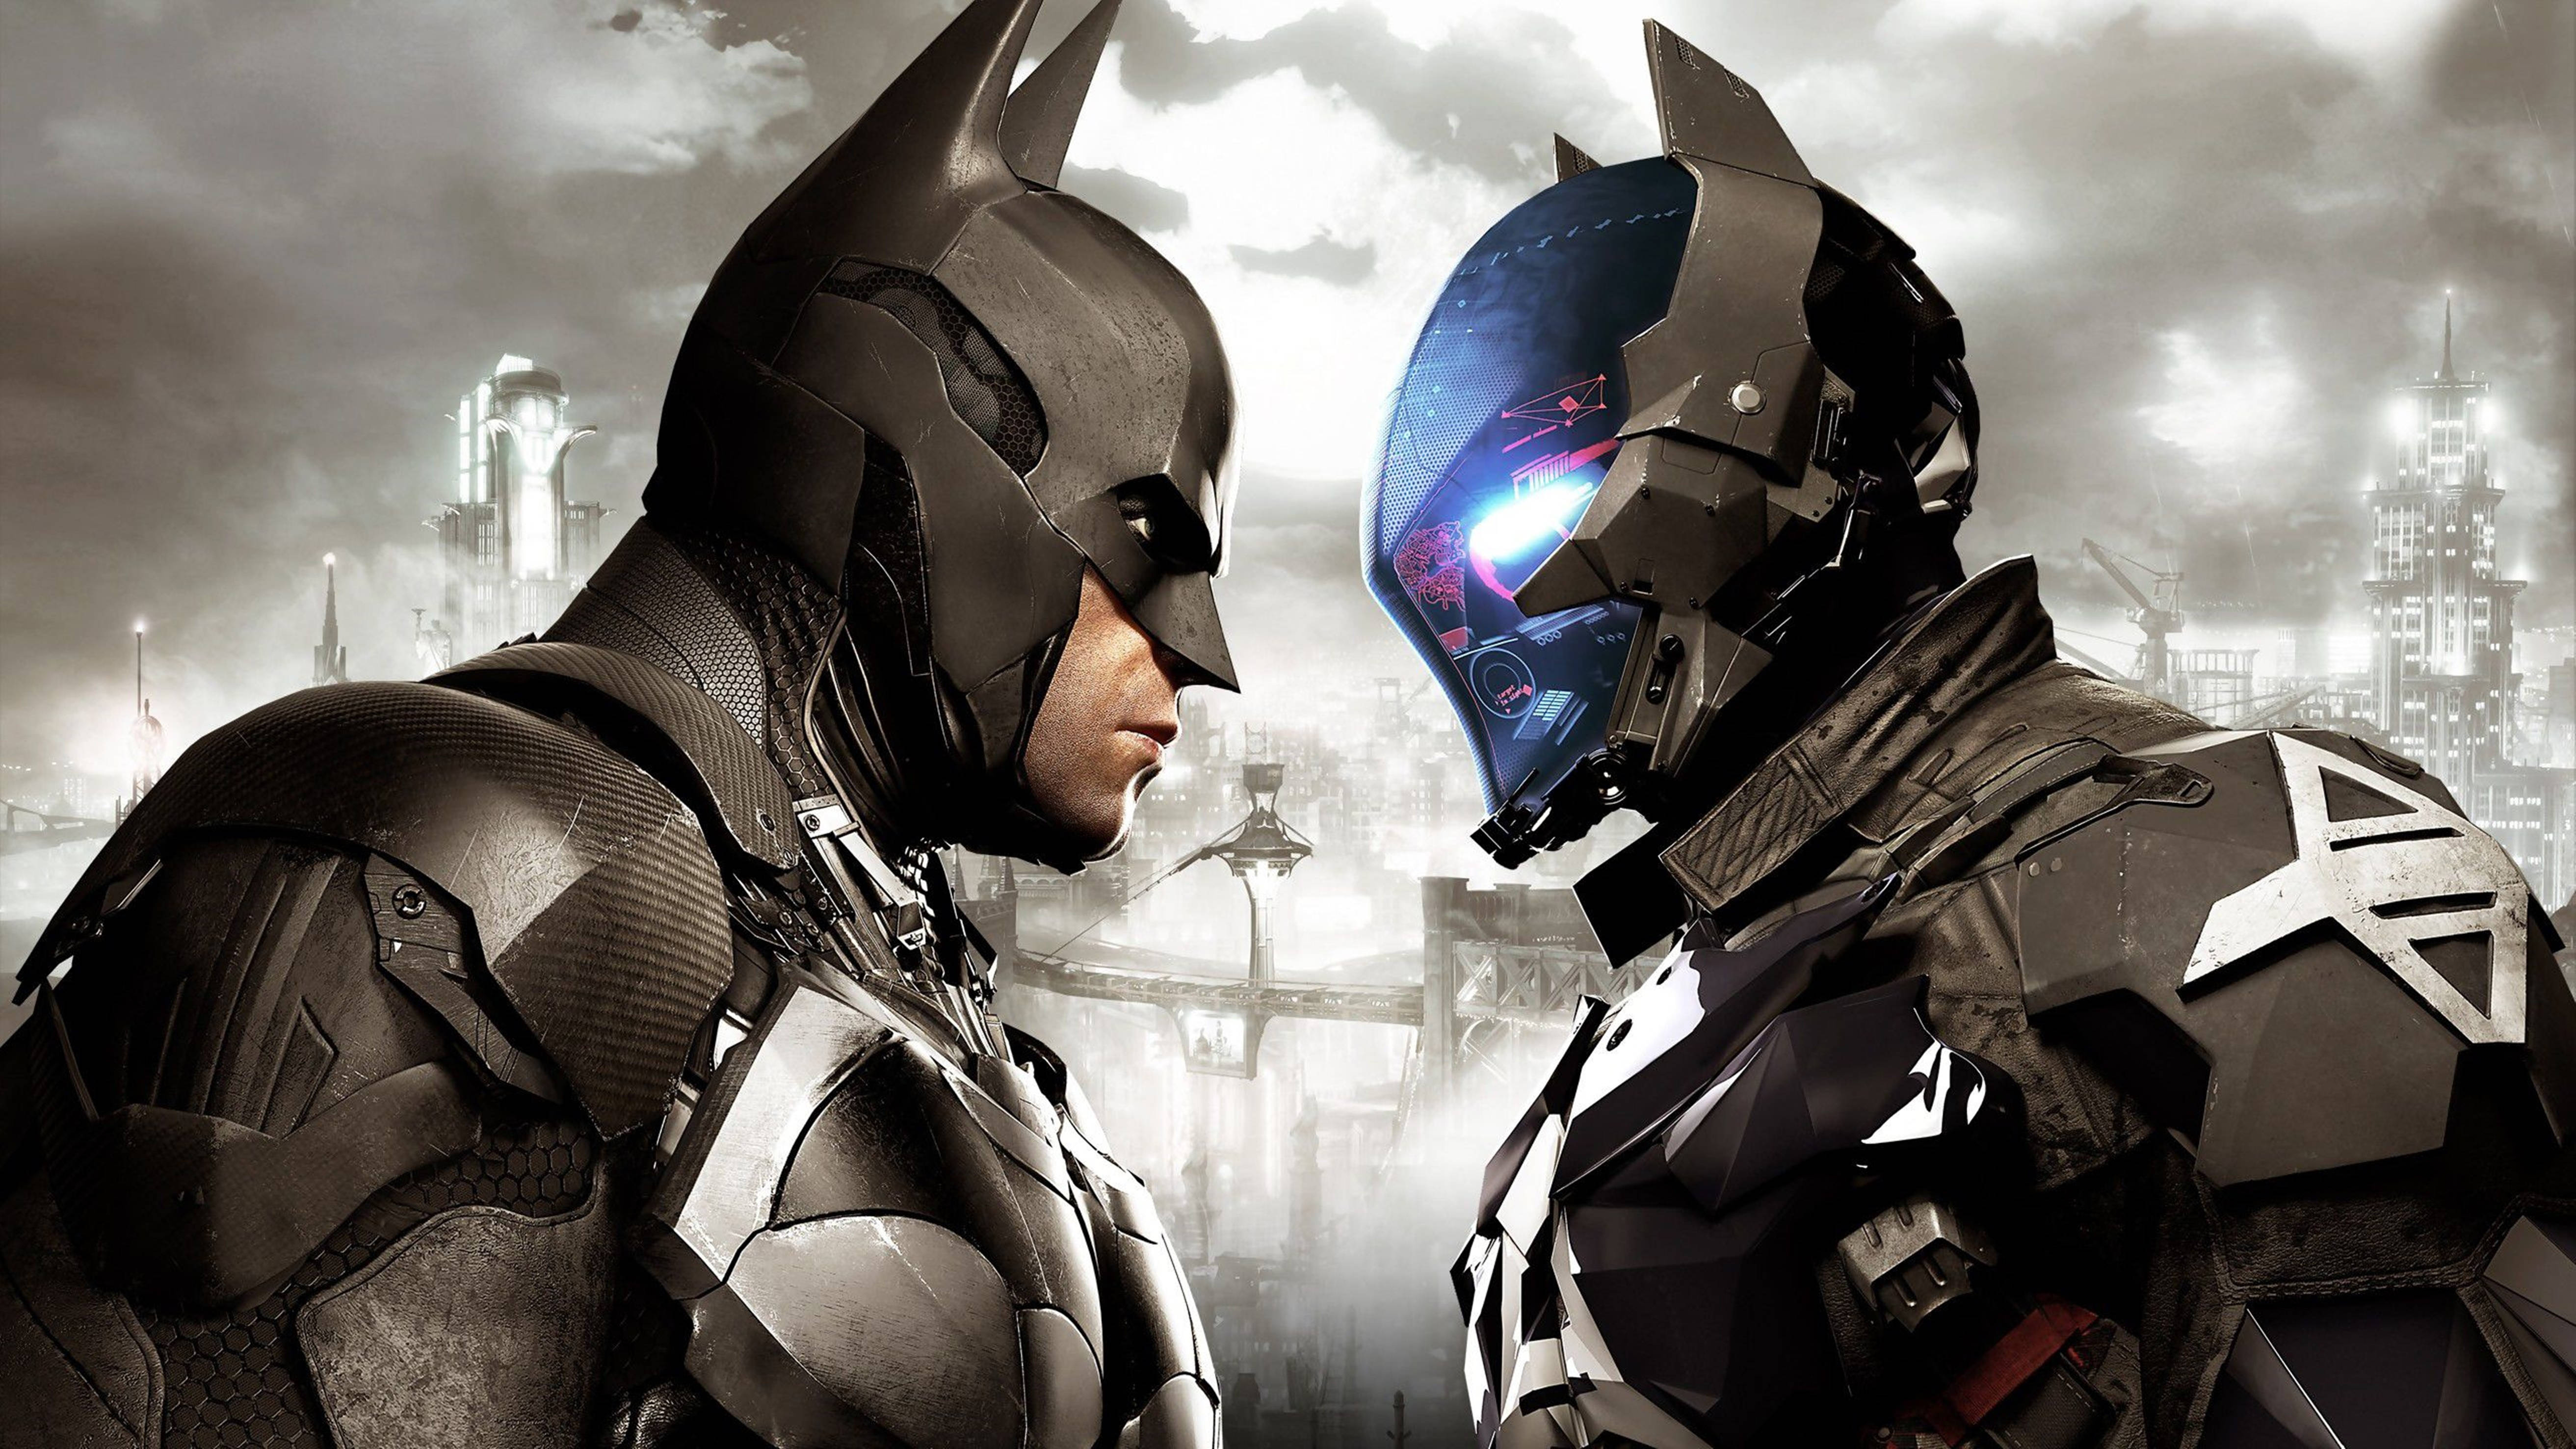 Batman Vs. Knight Arkham City 4k Background